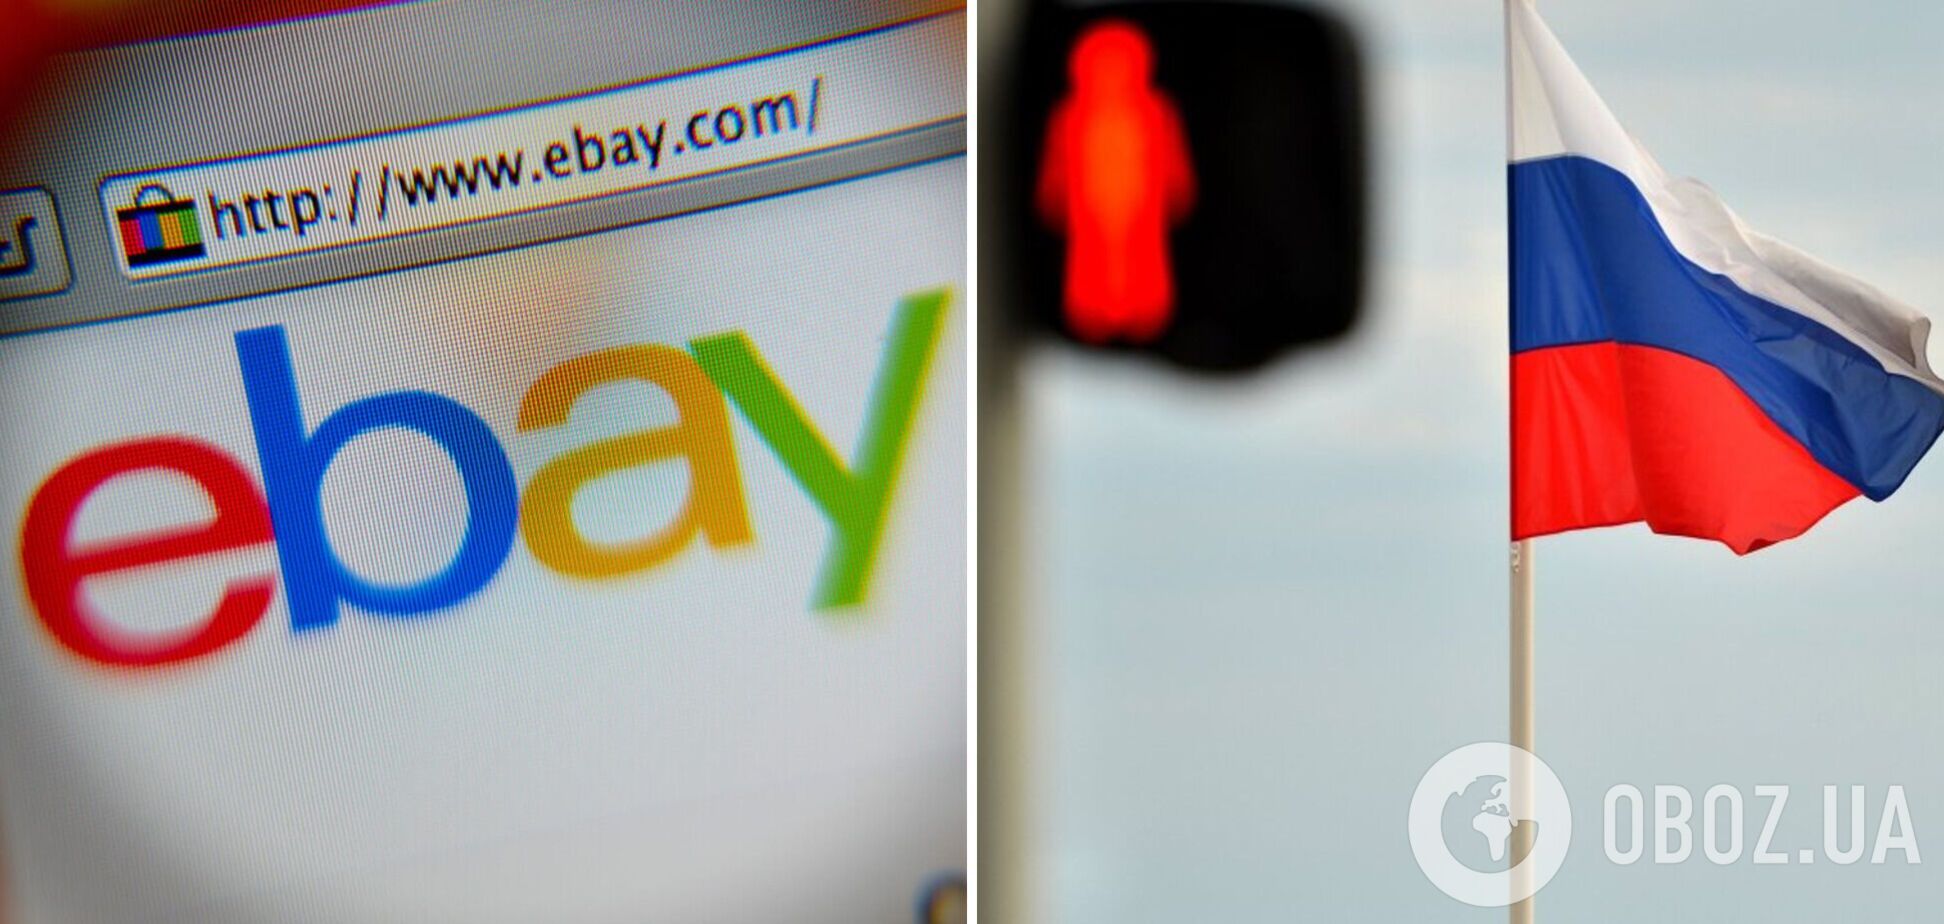 eBay заборонив торгувати продавцям із Росії